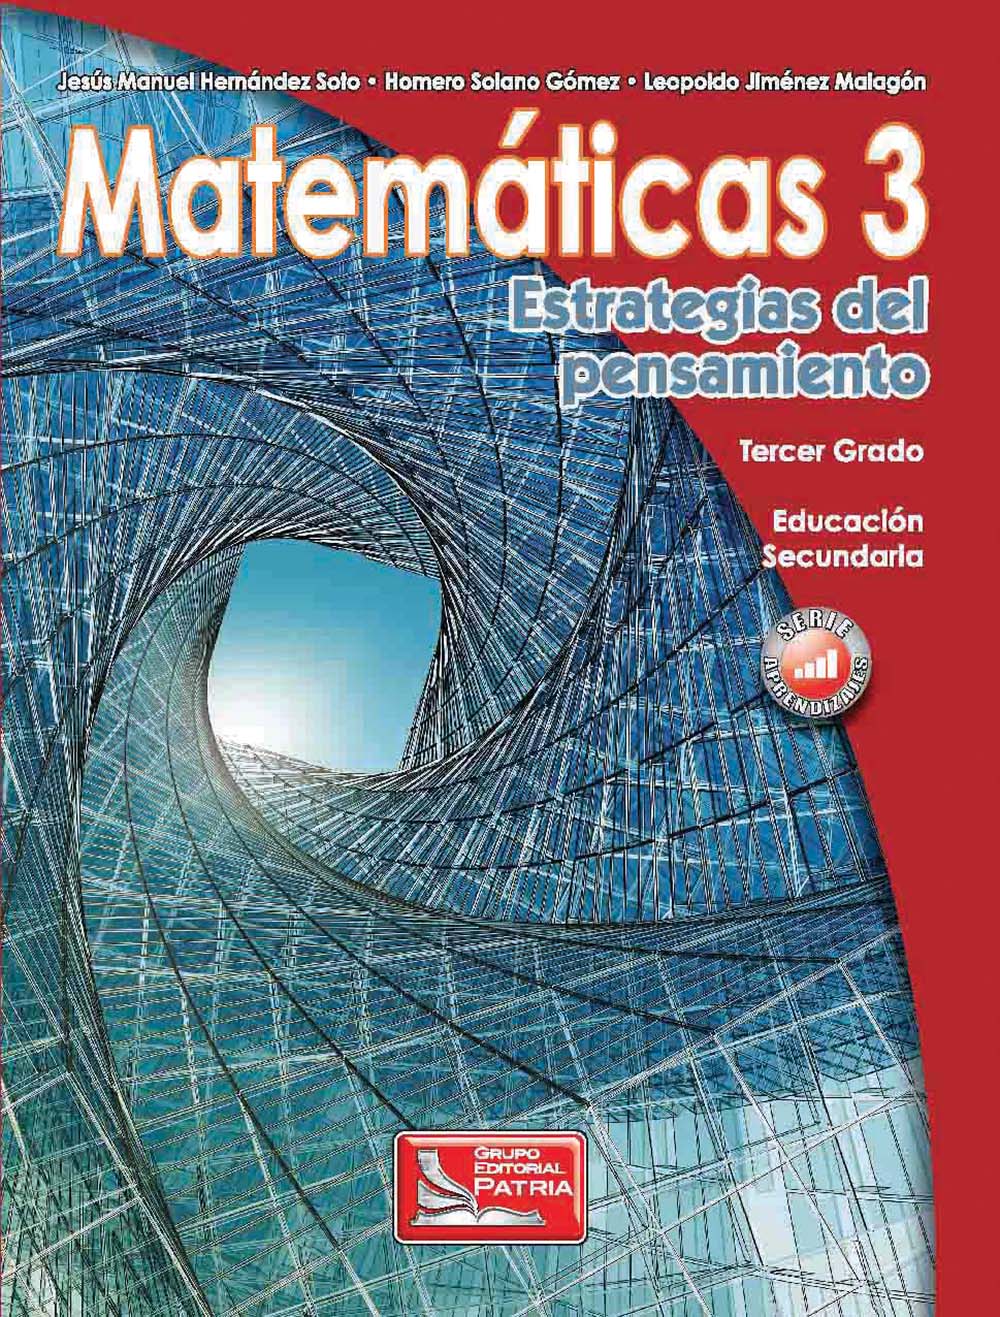 Matemáticas 3. Estrategias del pensamiento, Editorial: Grupo Editorial Patria, Nivel: Secundaria, Grado: 3